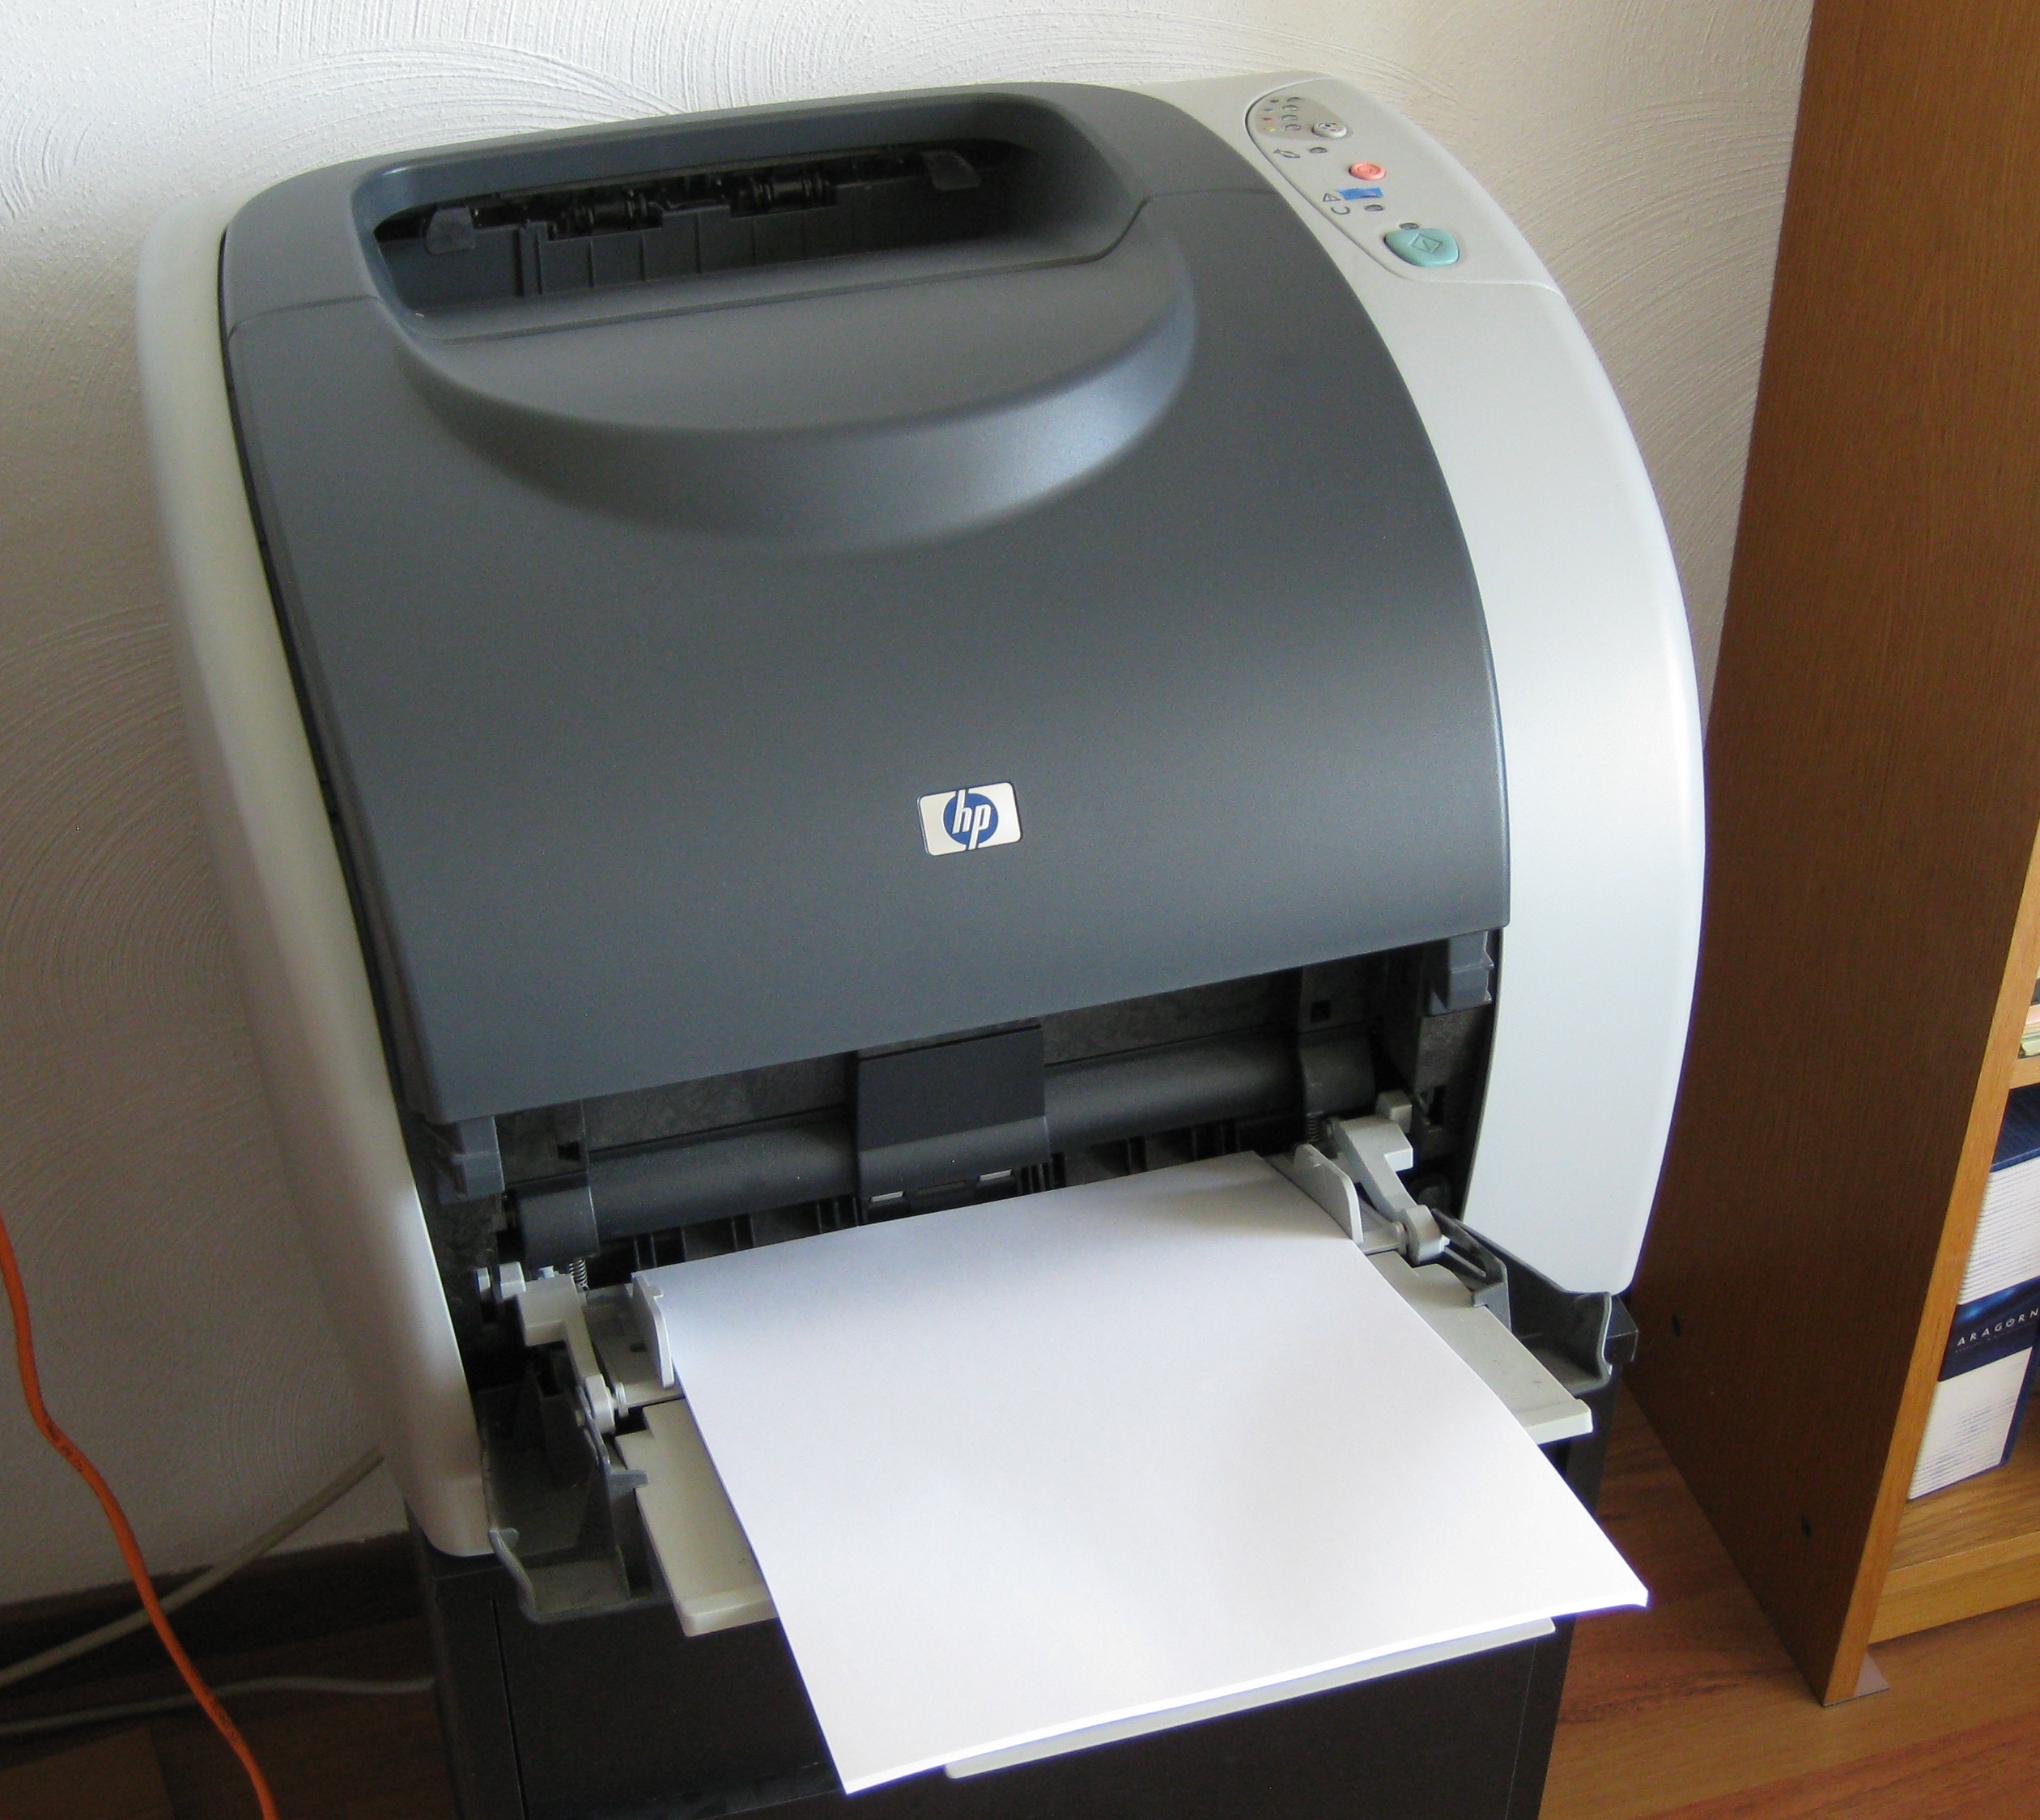 the misbehaving printer.